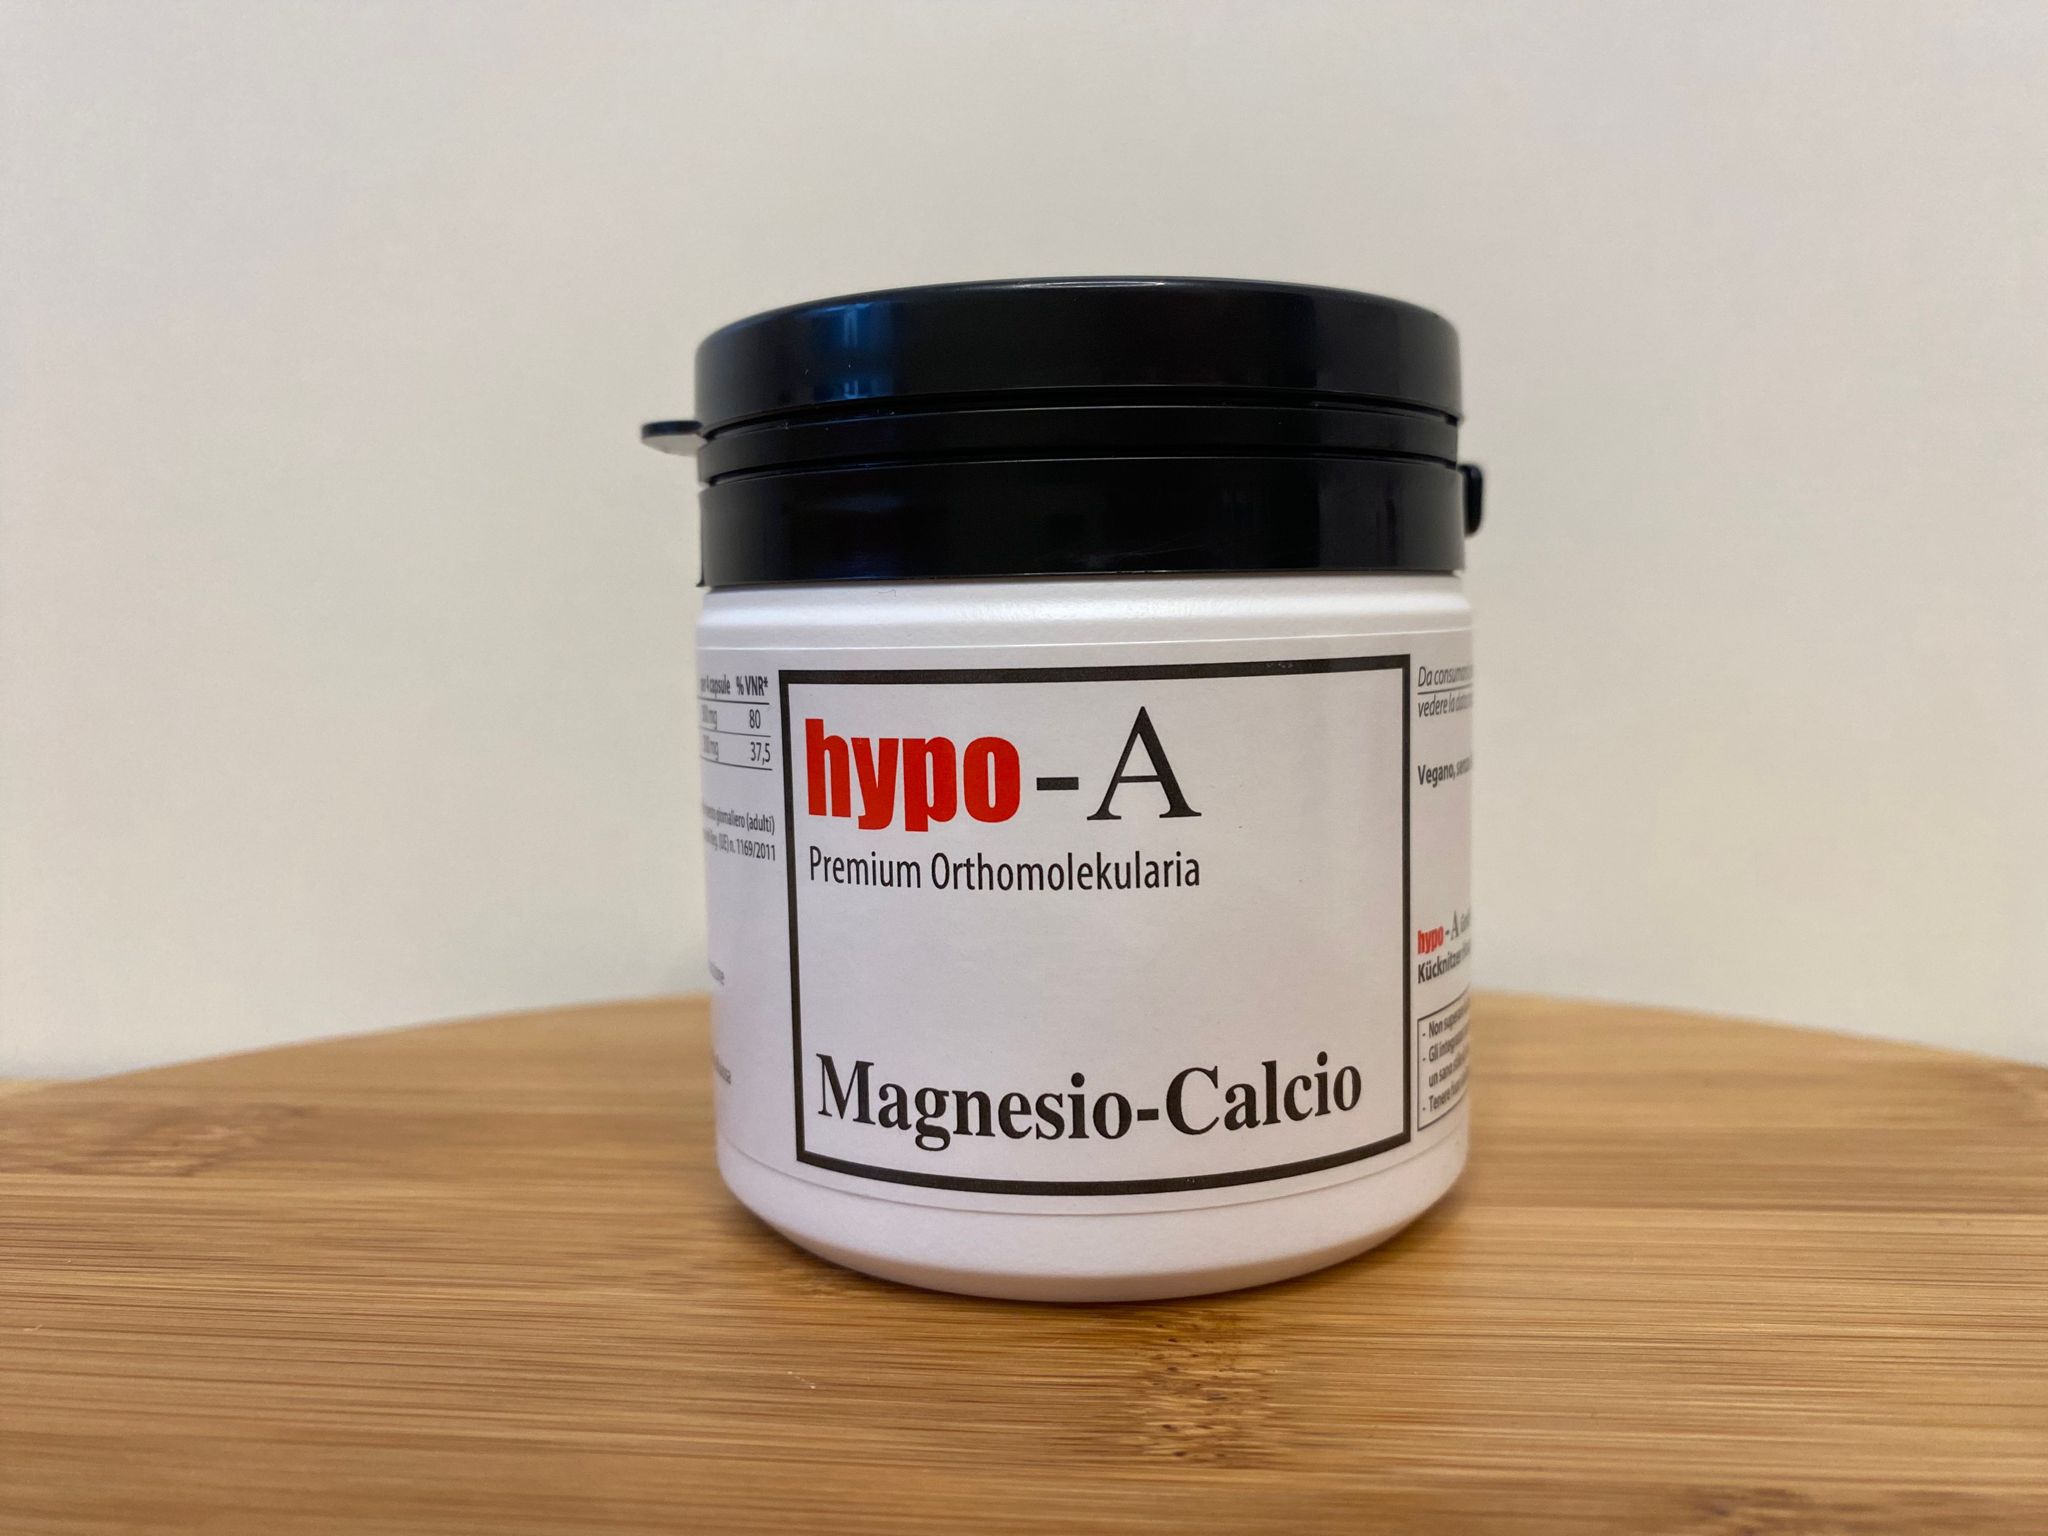 Hypo A: Magnesio-Calcio